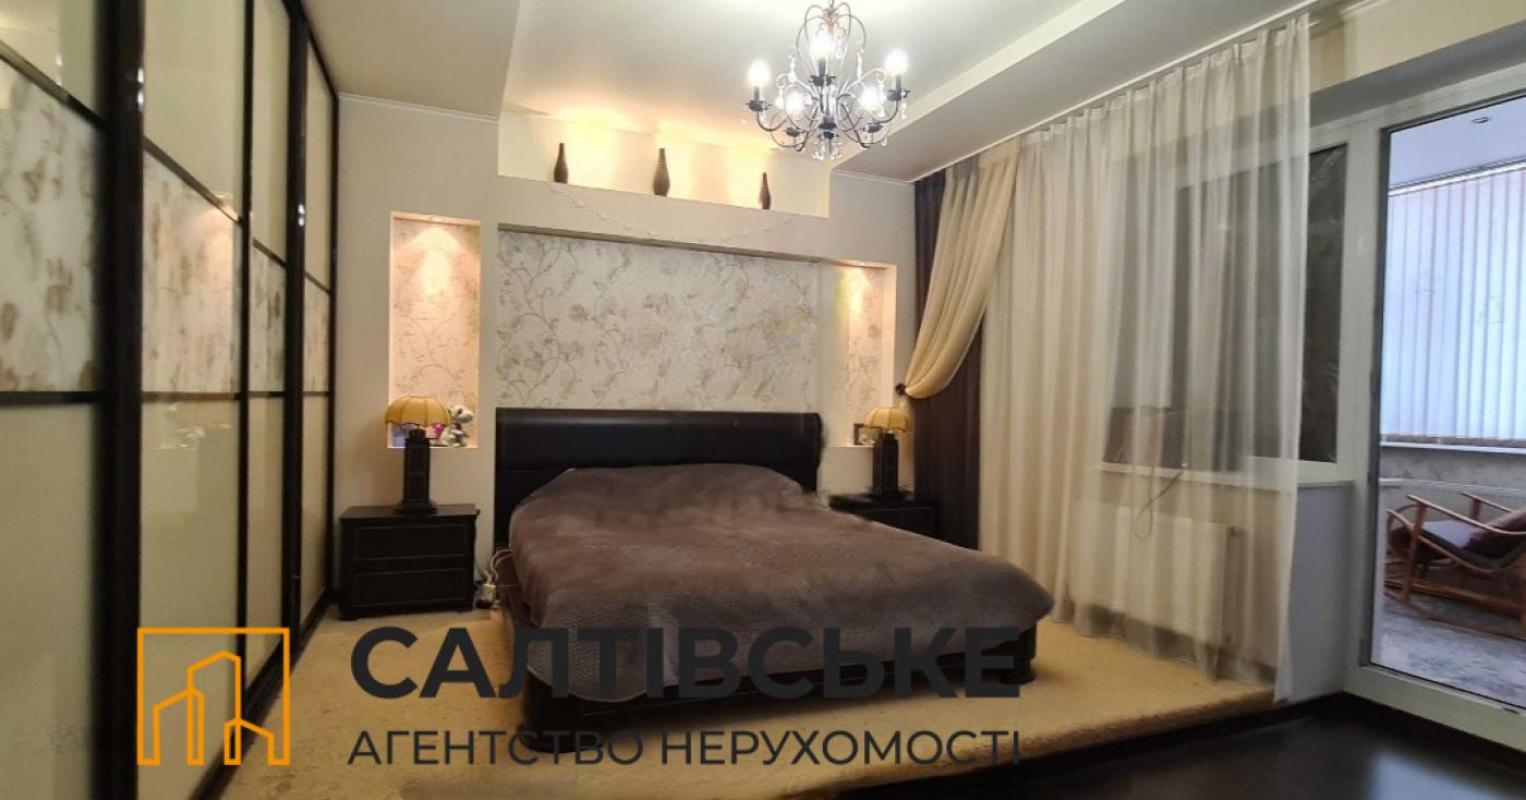 Sale 3 bedroom-(s) apartment 86 sq. m., Akademika Pavlova Street 160д